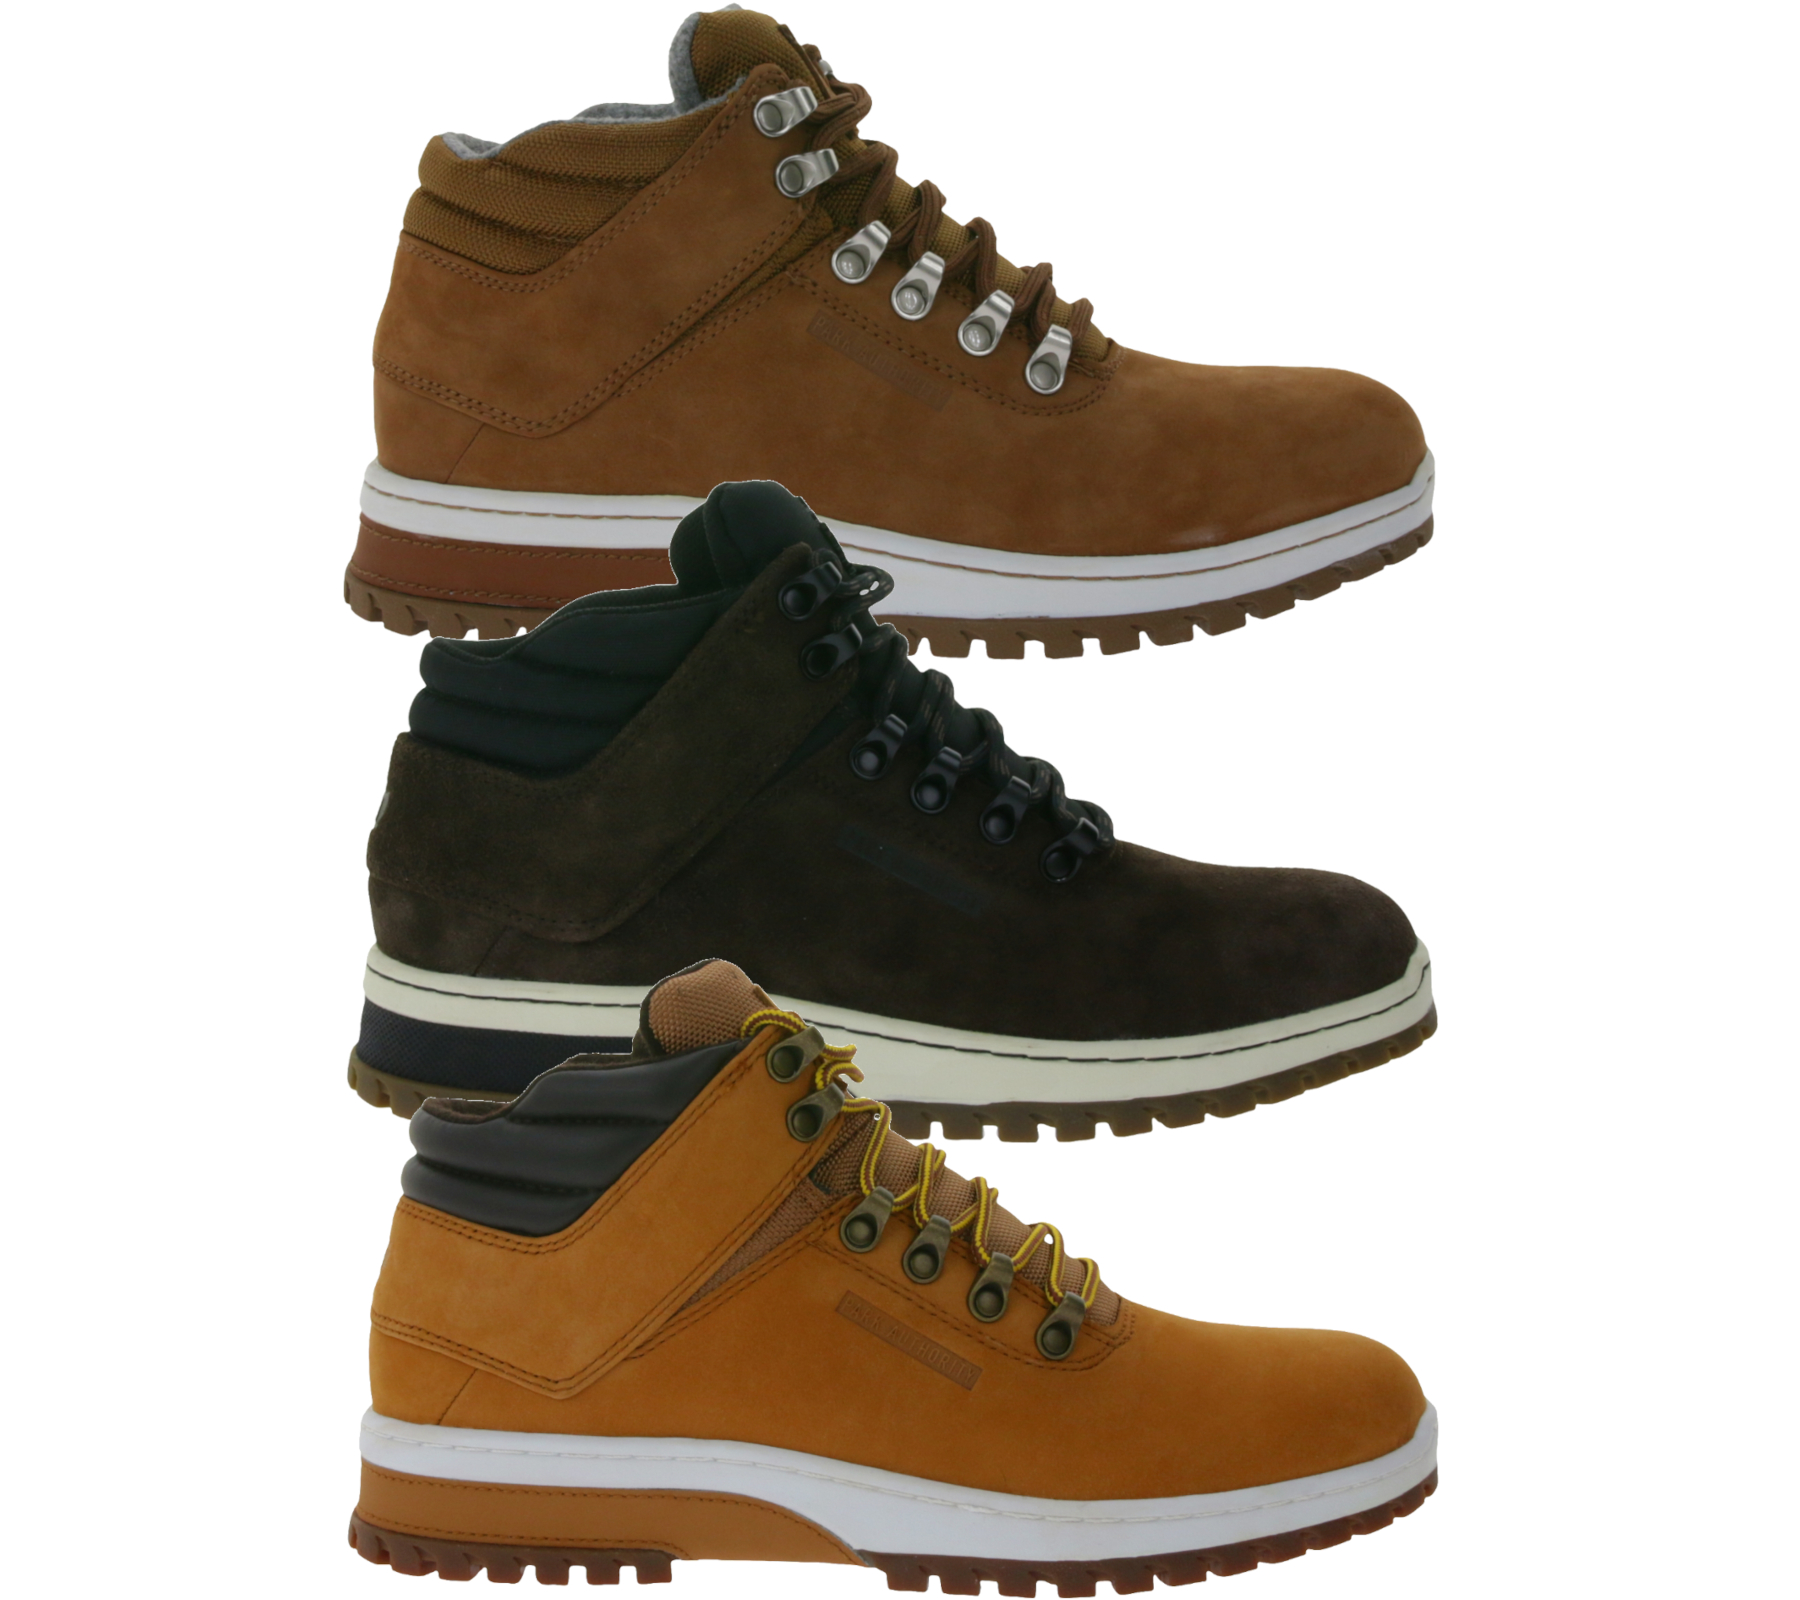 PARK AUTHORITY by K1X | Kickz H1ke Territory Superior Herren Wander-Schuhe aus Echtleder Sneaker-Boots in verschiedenen Braun-Farben von K1X | KICKZ